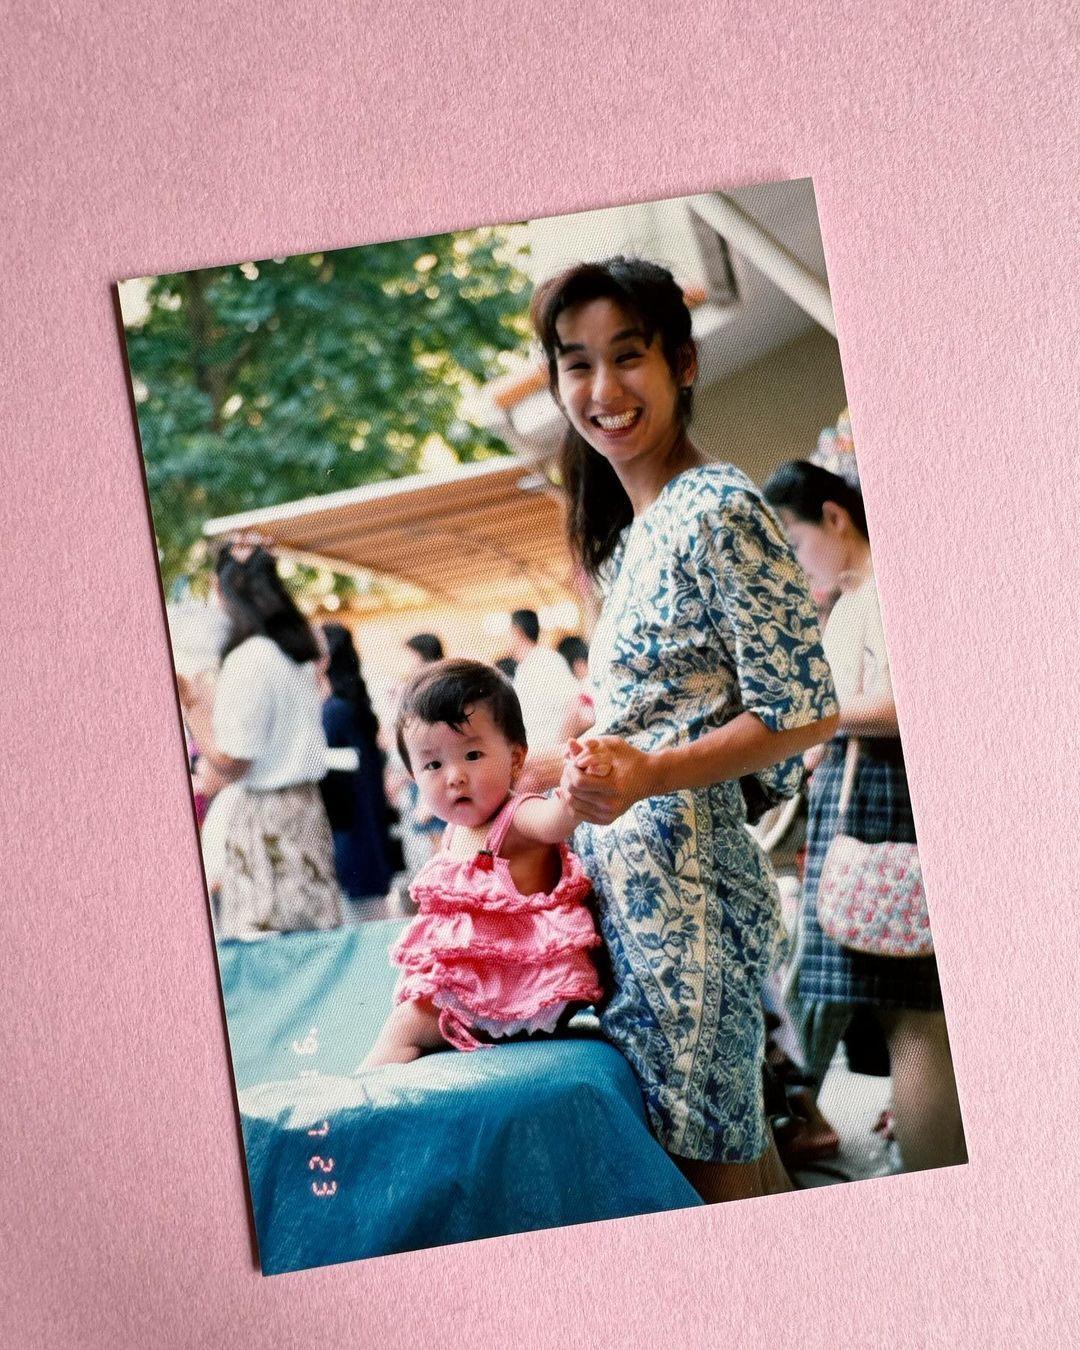 浅田真央 亡き母への思い 赤い花を持ち舞う姿を“母の日”に投稿 「私は母のように強く生きる」 母との2S写真も